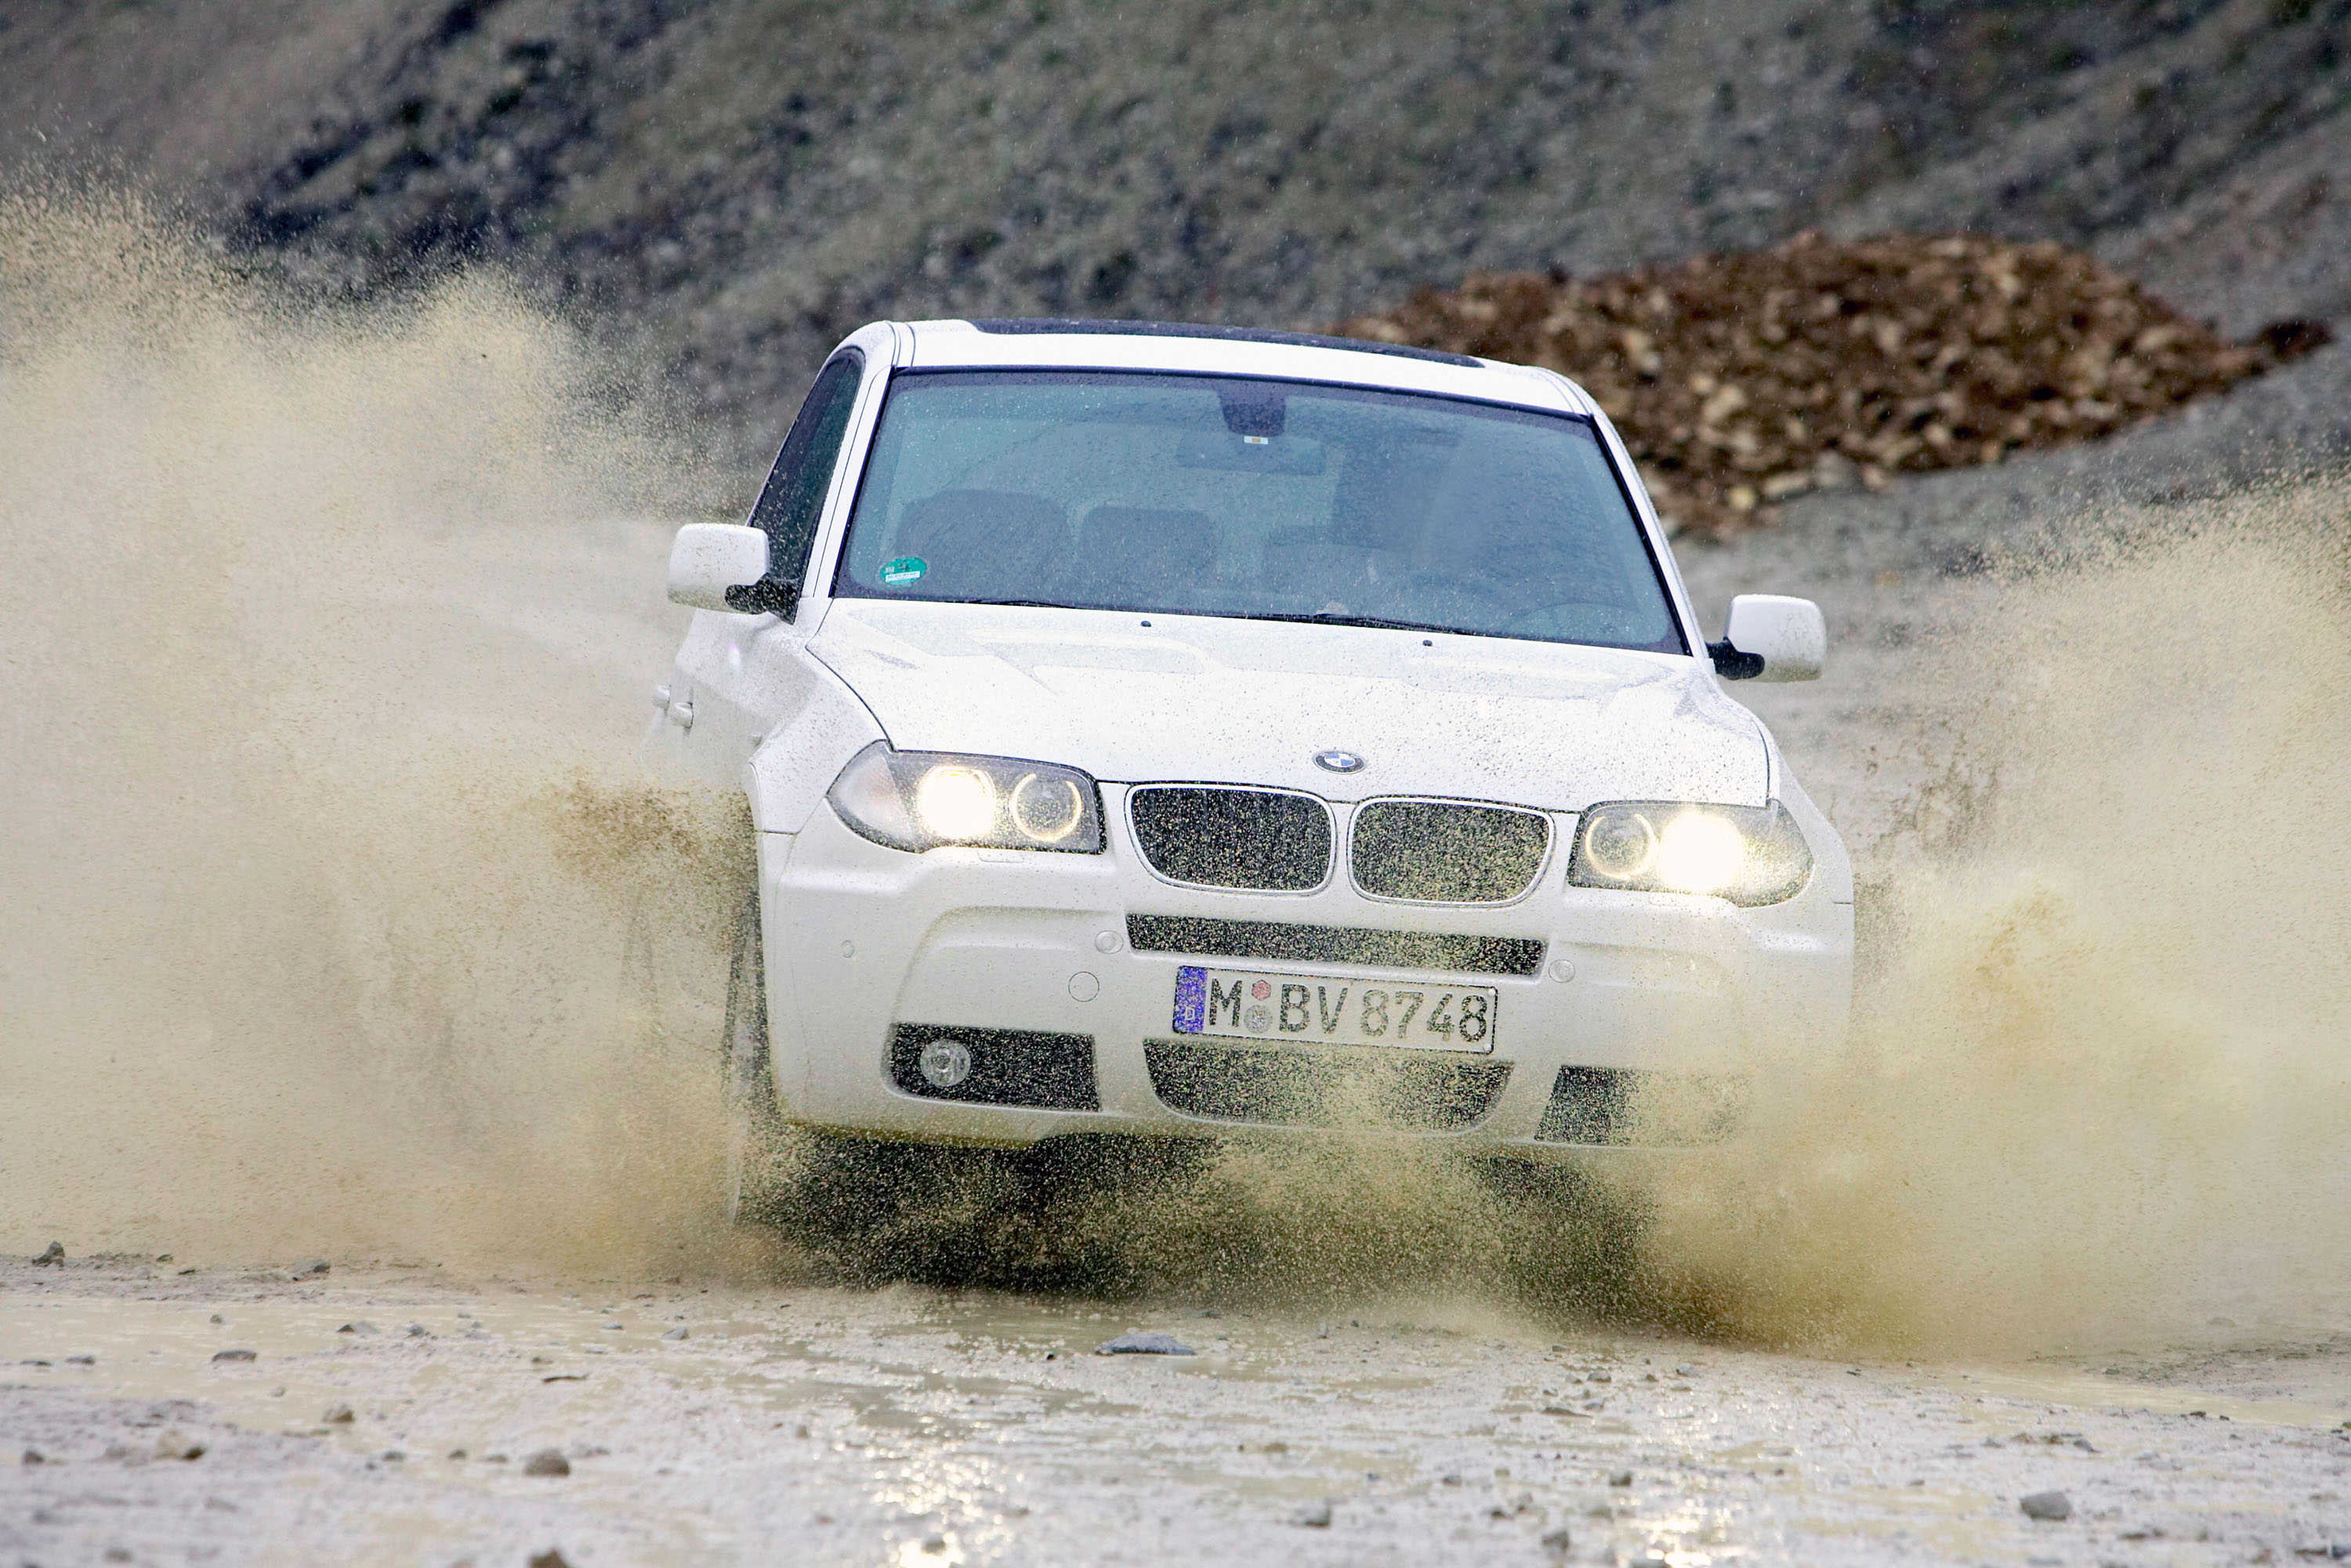 BMW X3 xDrive18d